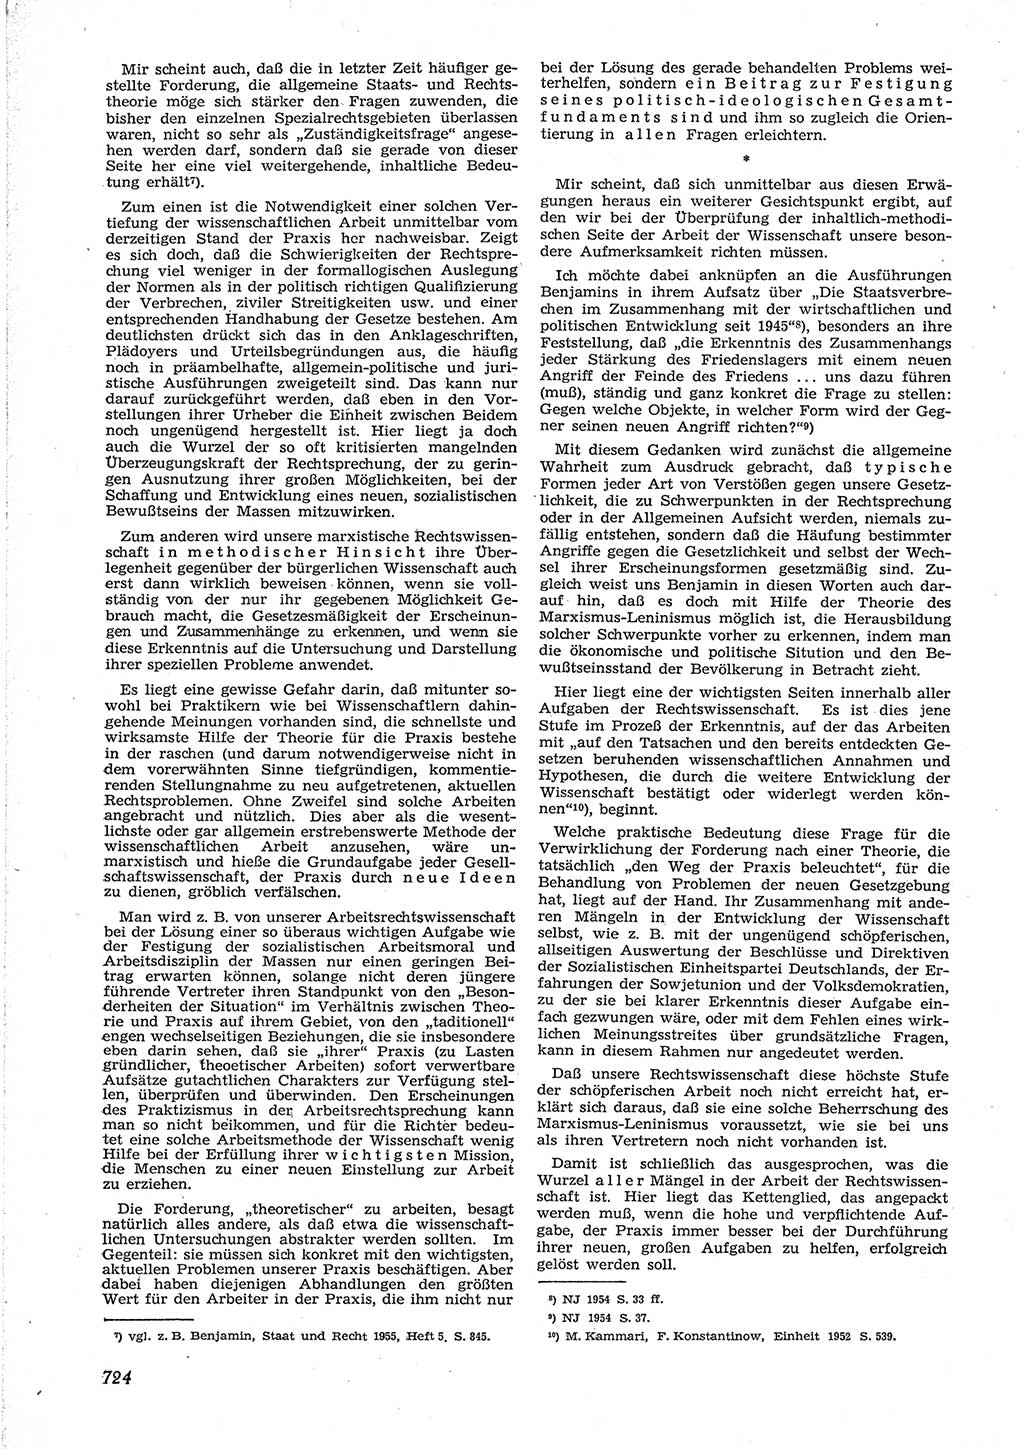 Neue Justiz (NJ), Zeitschrift für Recht und Rechtswissenschaft [Deutsche Demokratische Republik (DDR)], 9. Jahrgang 1955, Seite 724 (NJ DDR 1955, S. 724)